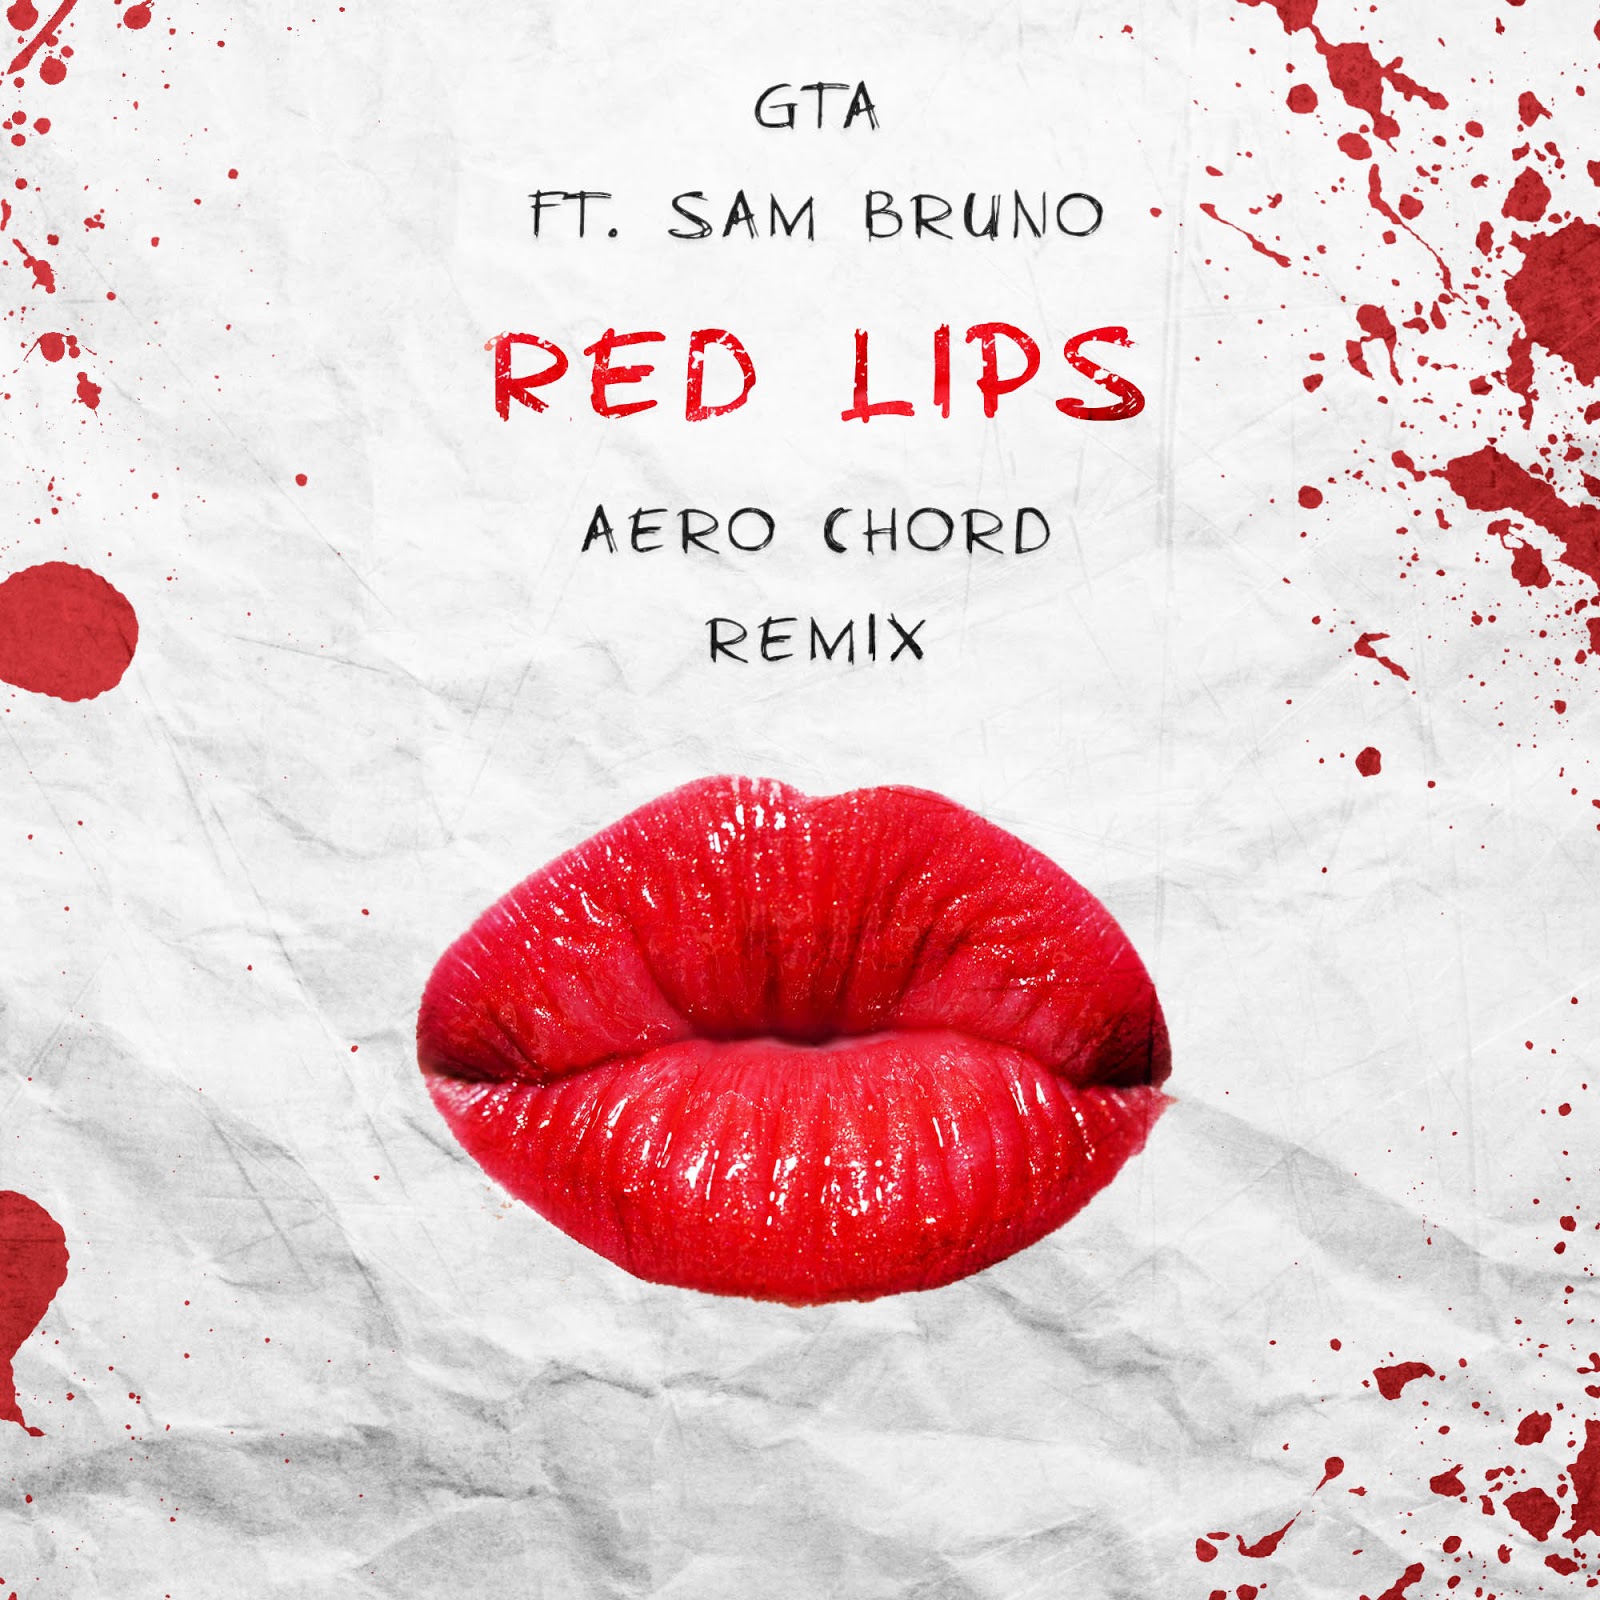 Aero Chord Trap Music Edm Hip Hop Free Downloads - aero chord surface roblox id